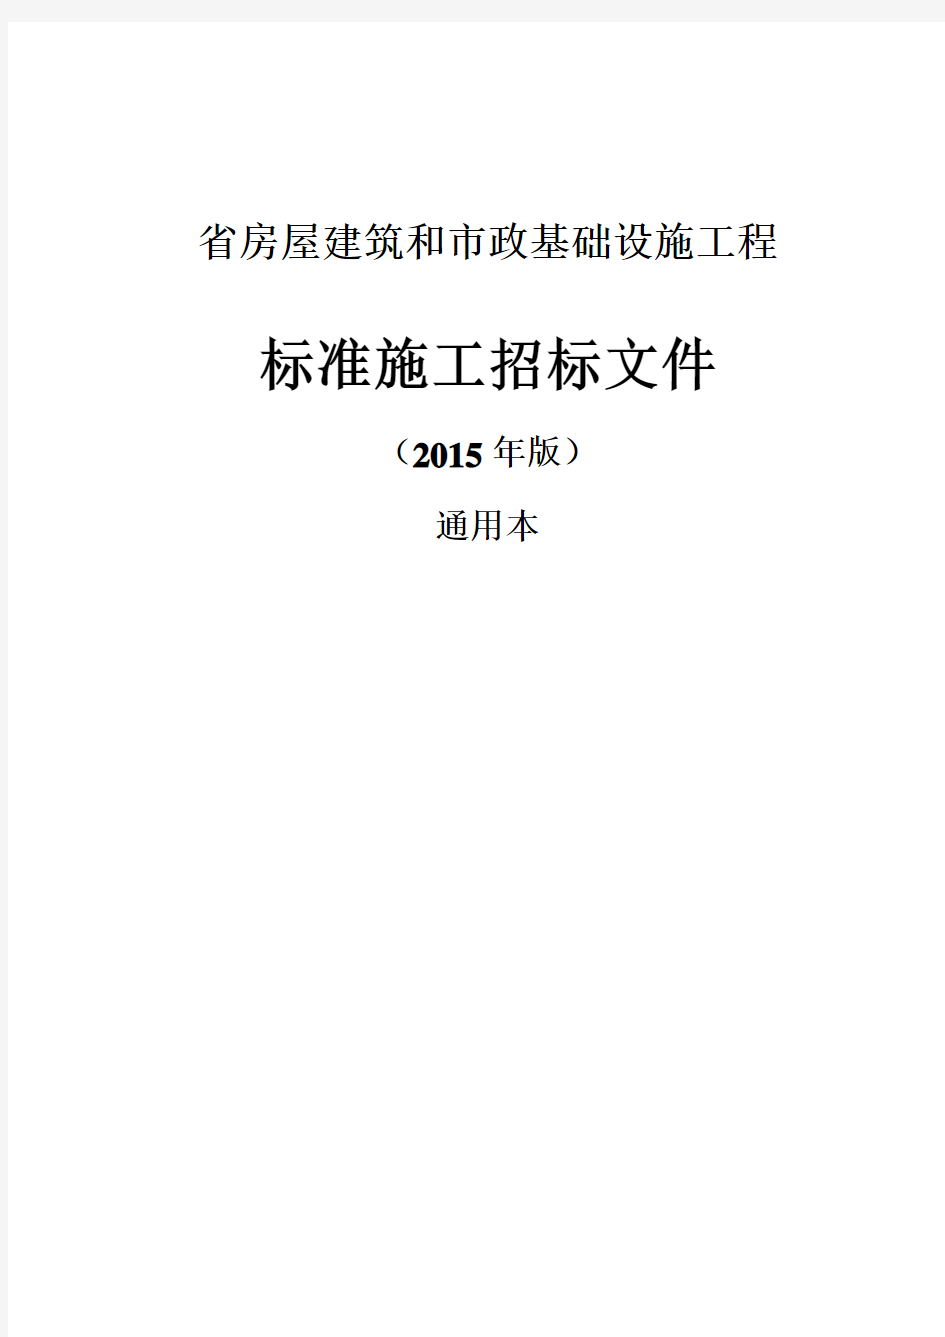 福建省标准施工招标文件通用本(2015版)